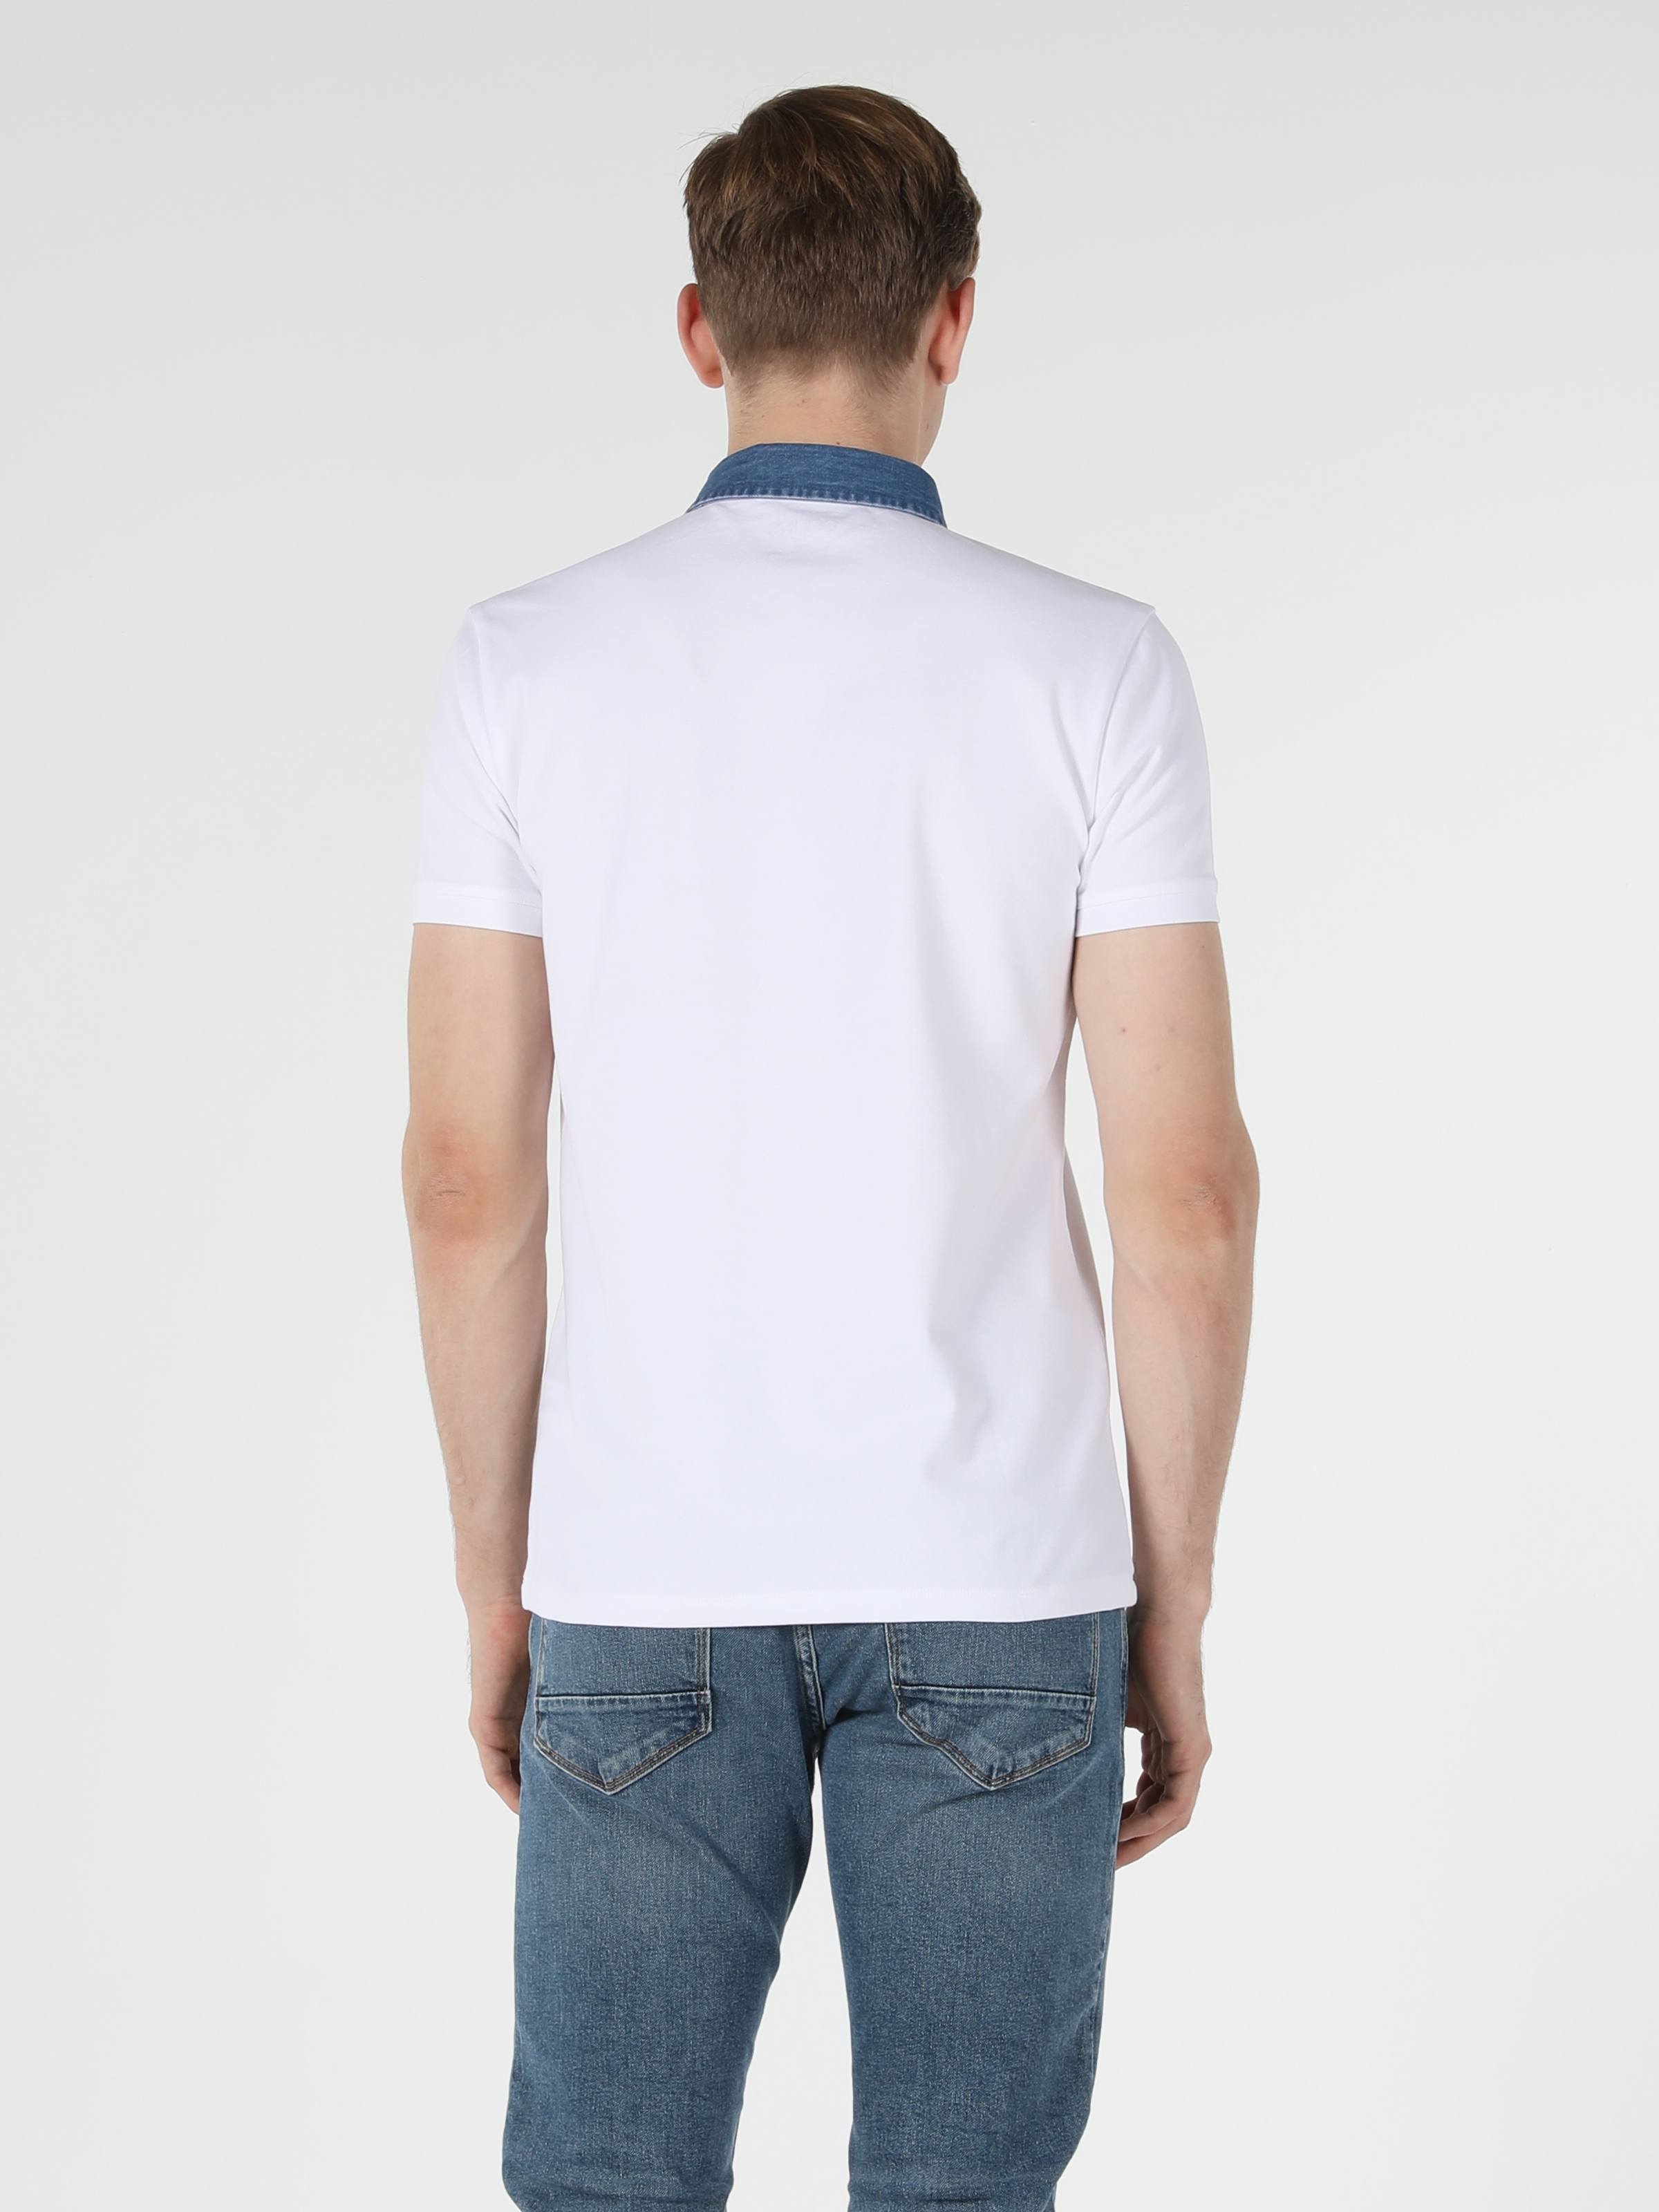 Afficher les détails de T-Shirt Polo Blanc À Manches Courtes Pour Hommes, Coupe Ajustée, Col Polo